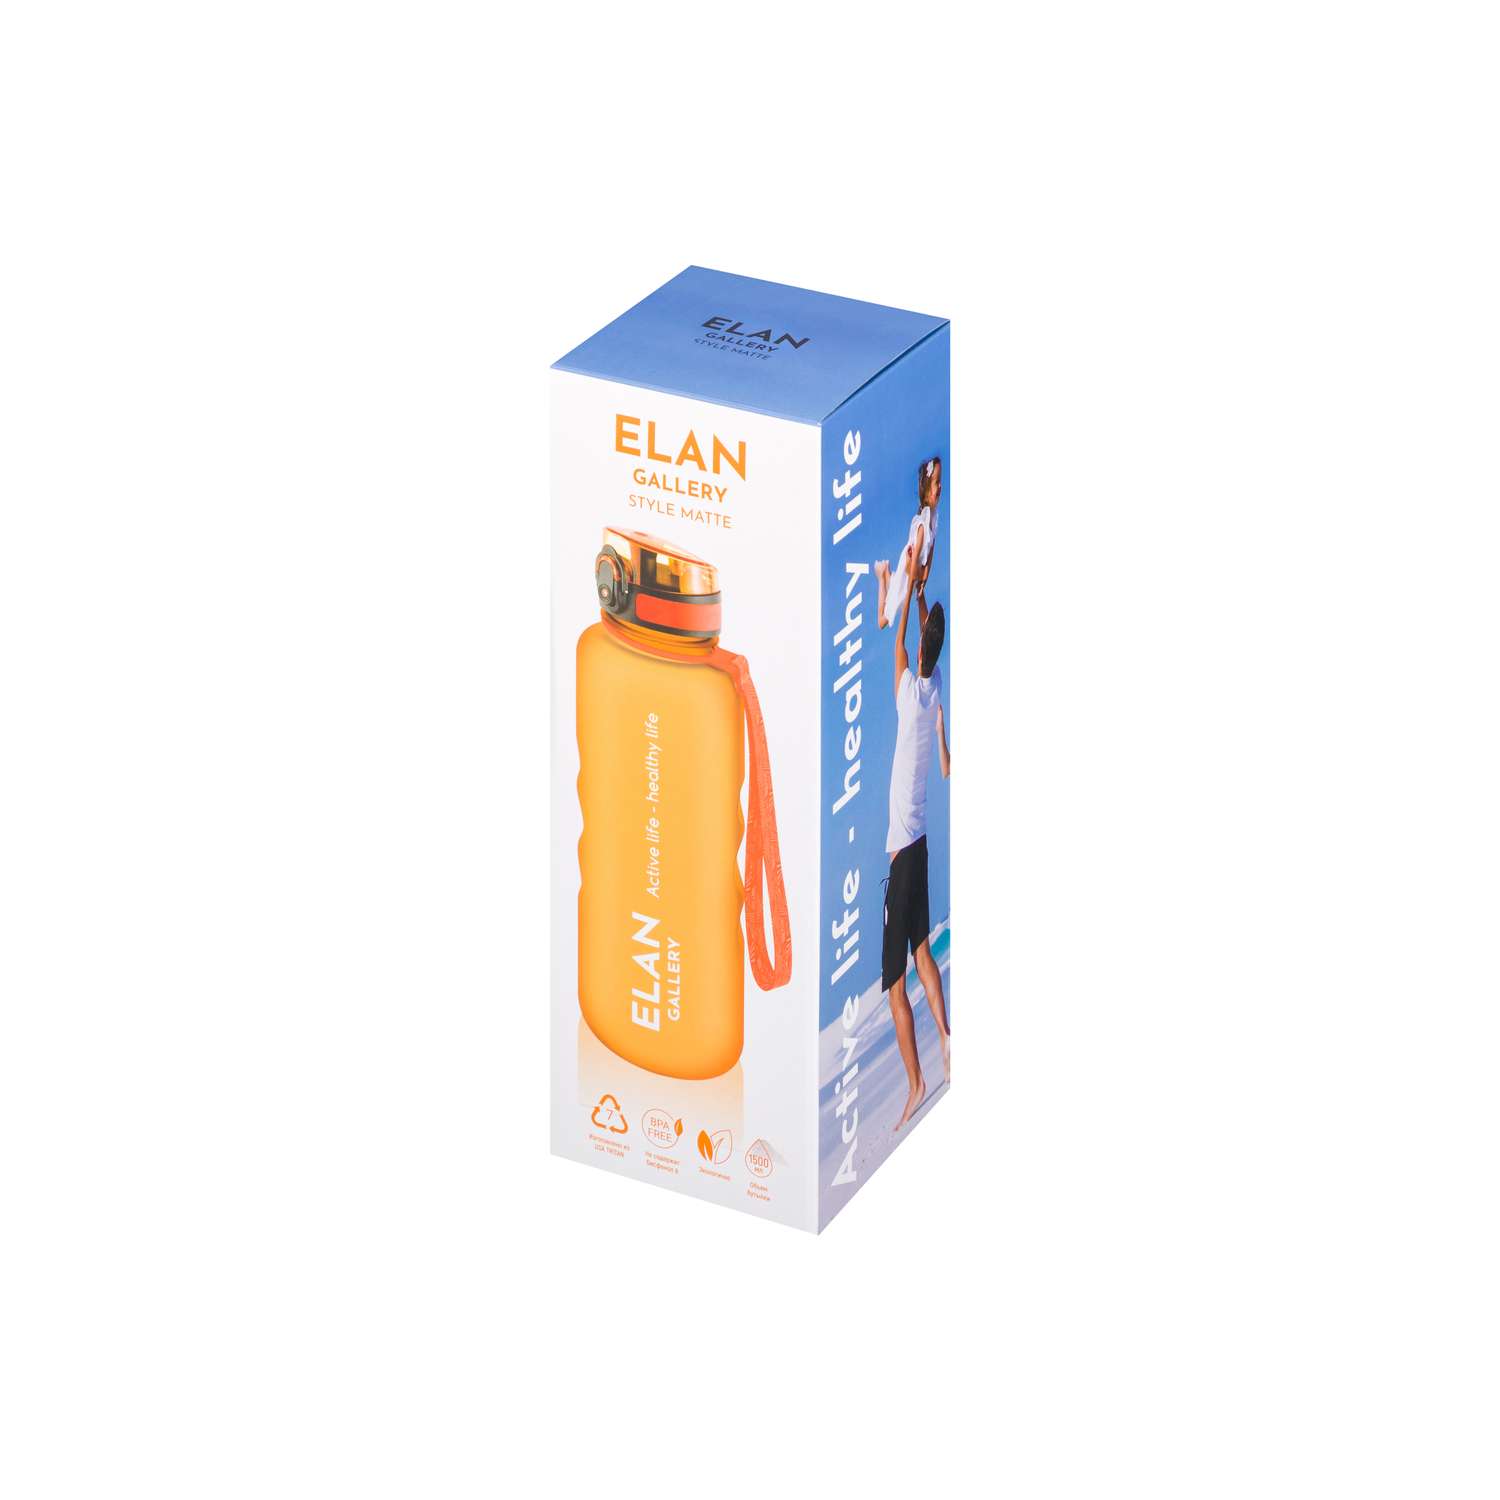 Бутылка для воды Elan Gallery 1.5 л Style Matte оранжевая - фото 11